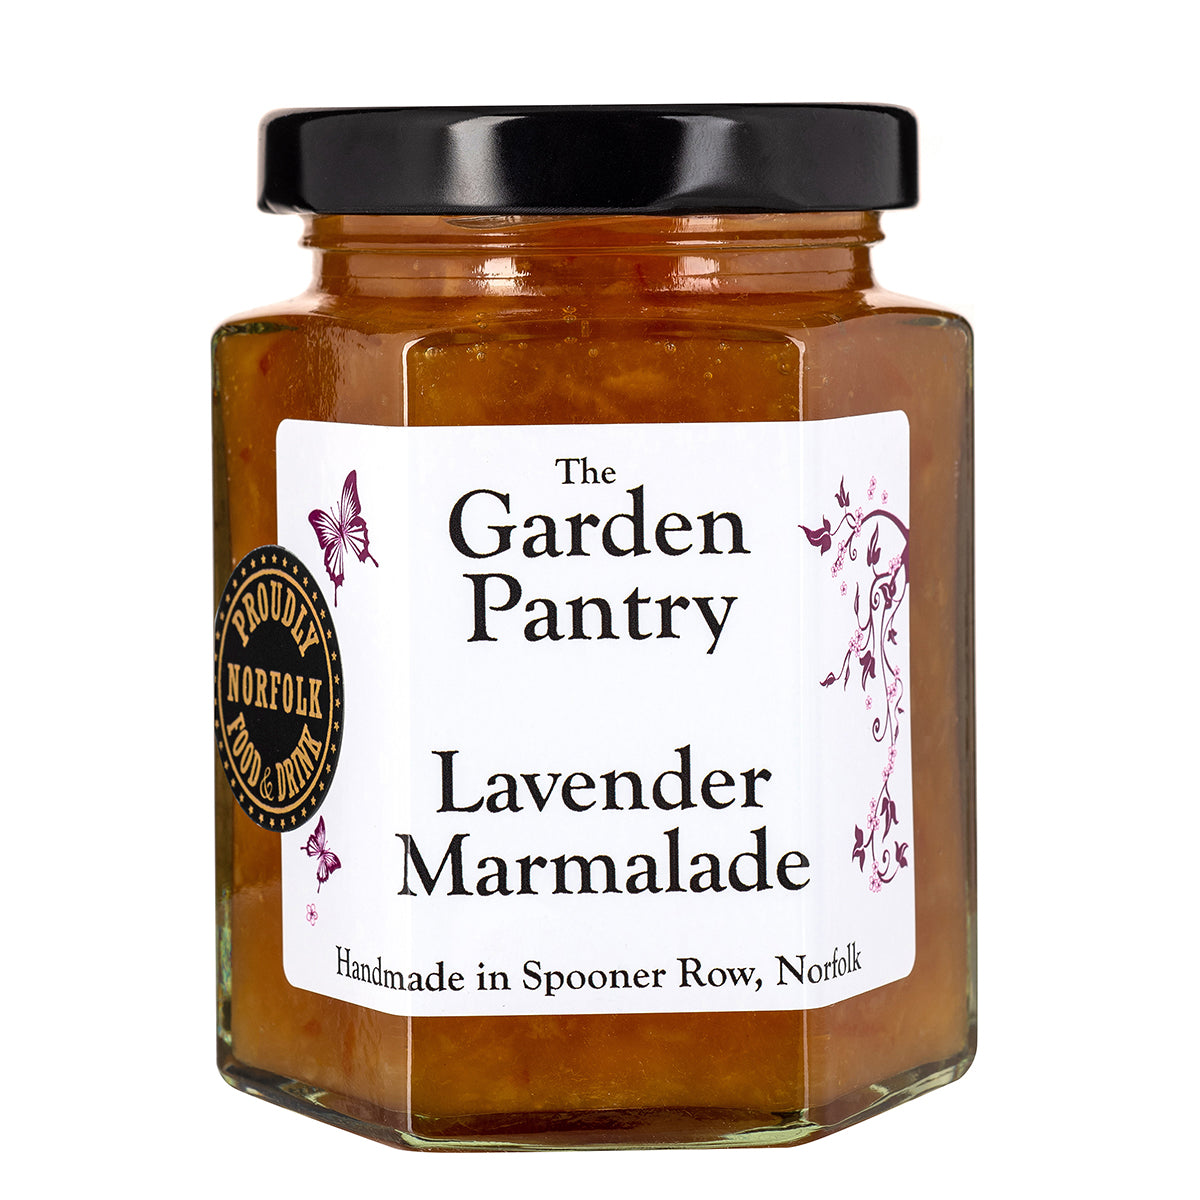 The Garden Pantry Lavender Marmalade